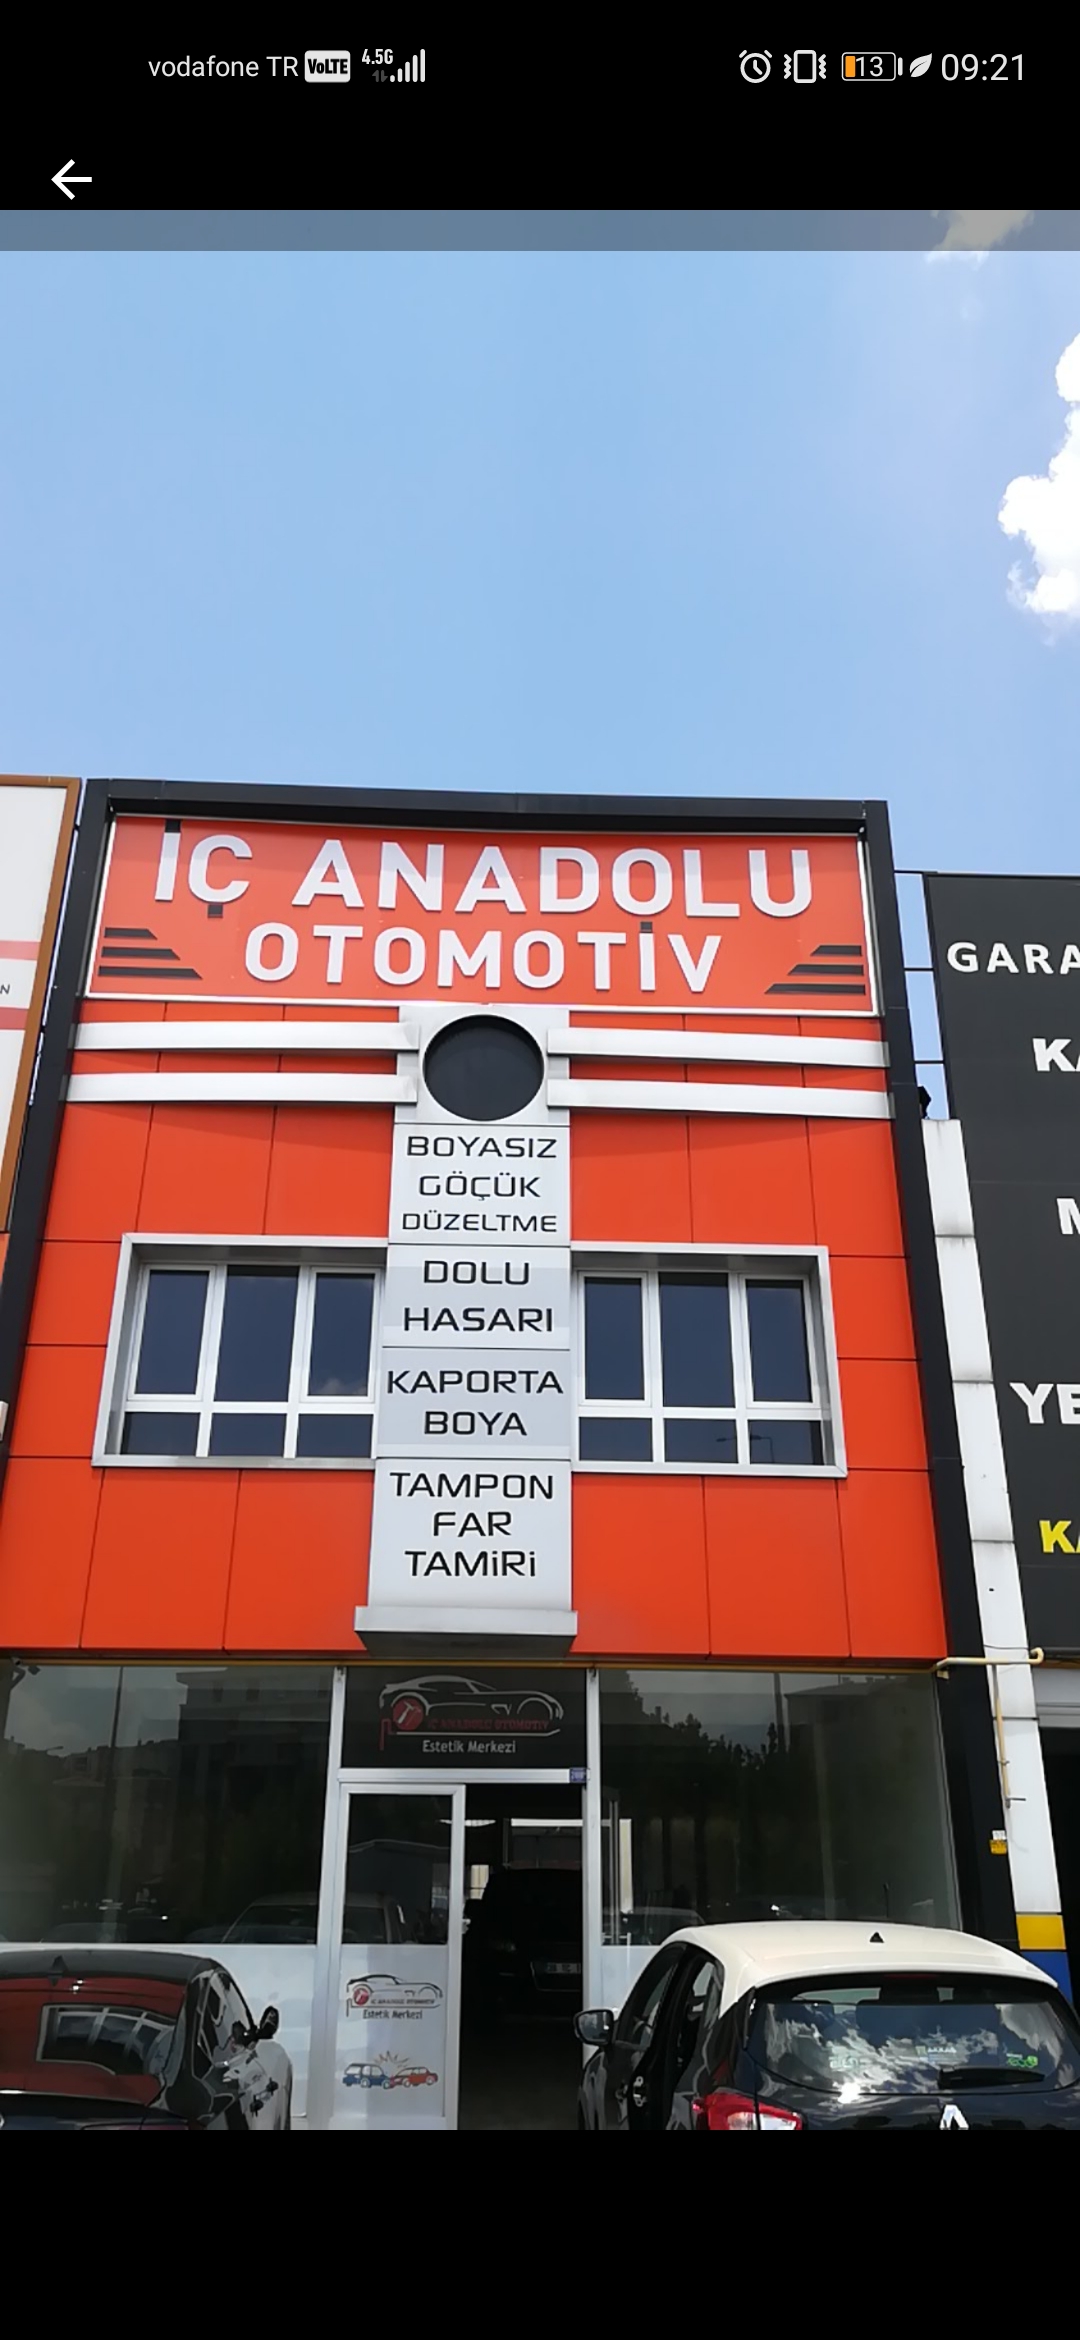 Göçük Düzeltme Boyasız Kaborta Düzeltme İç Anadolu Otomotiv Kayseri